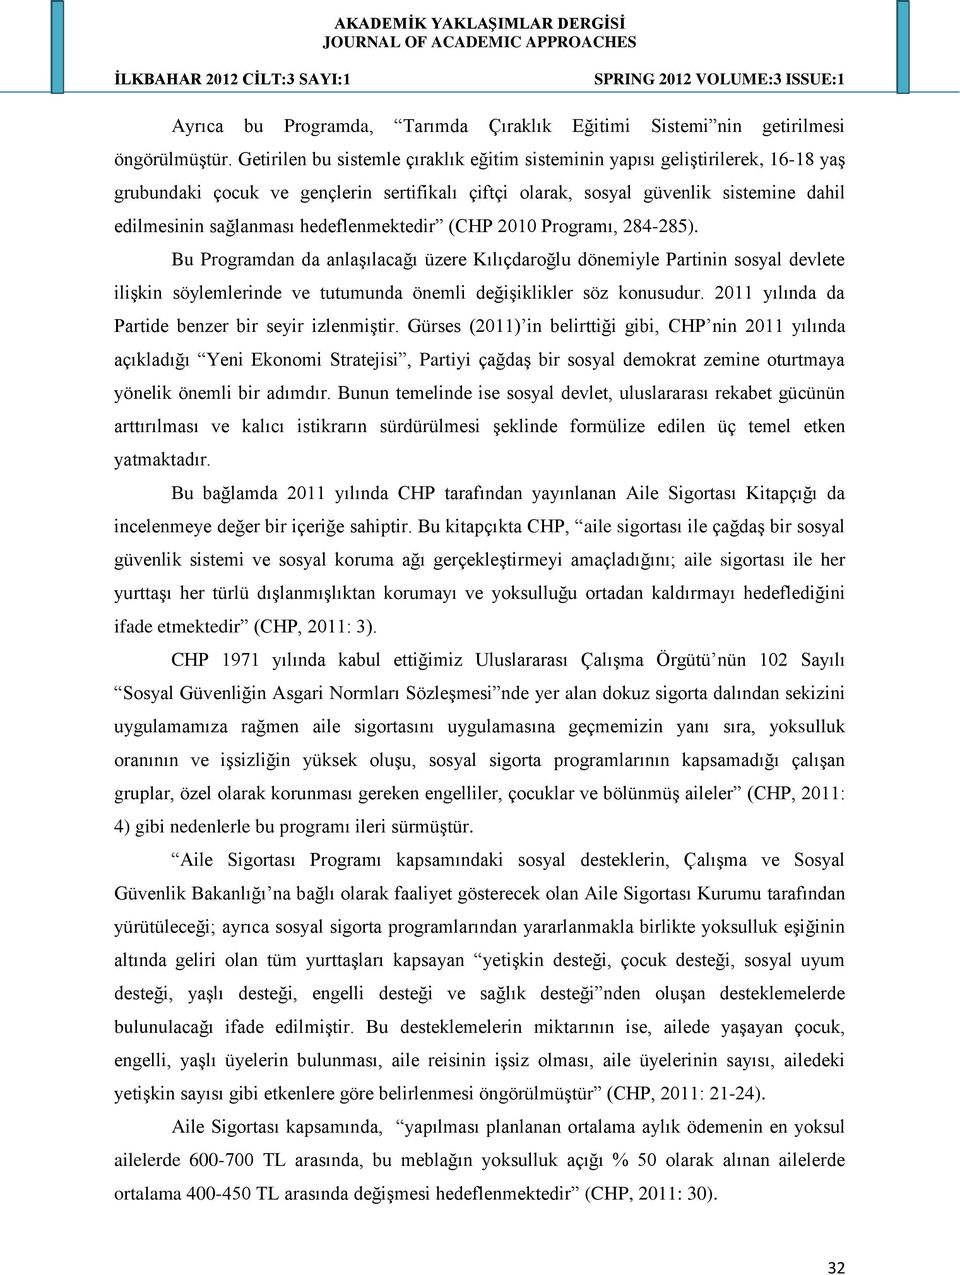 hedeflenmektedir (CHP 2010 Programı, 284-285). Bu Programdan da anlaģılacağı üzere Kılıçdaroğlu dönemiyle Partinin sosyal devlete iliģkin söylemlerinde ve tutumunda önemli değiģiklikler söz konusudur.